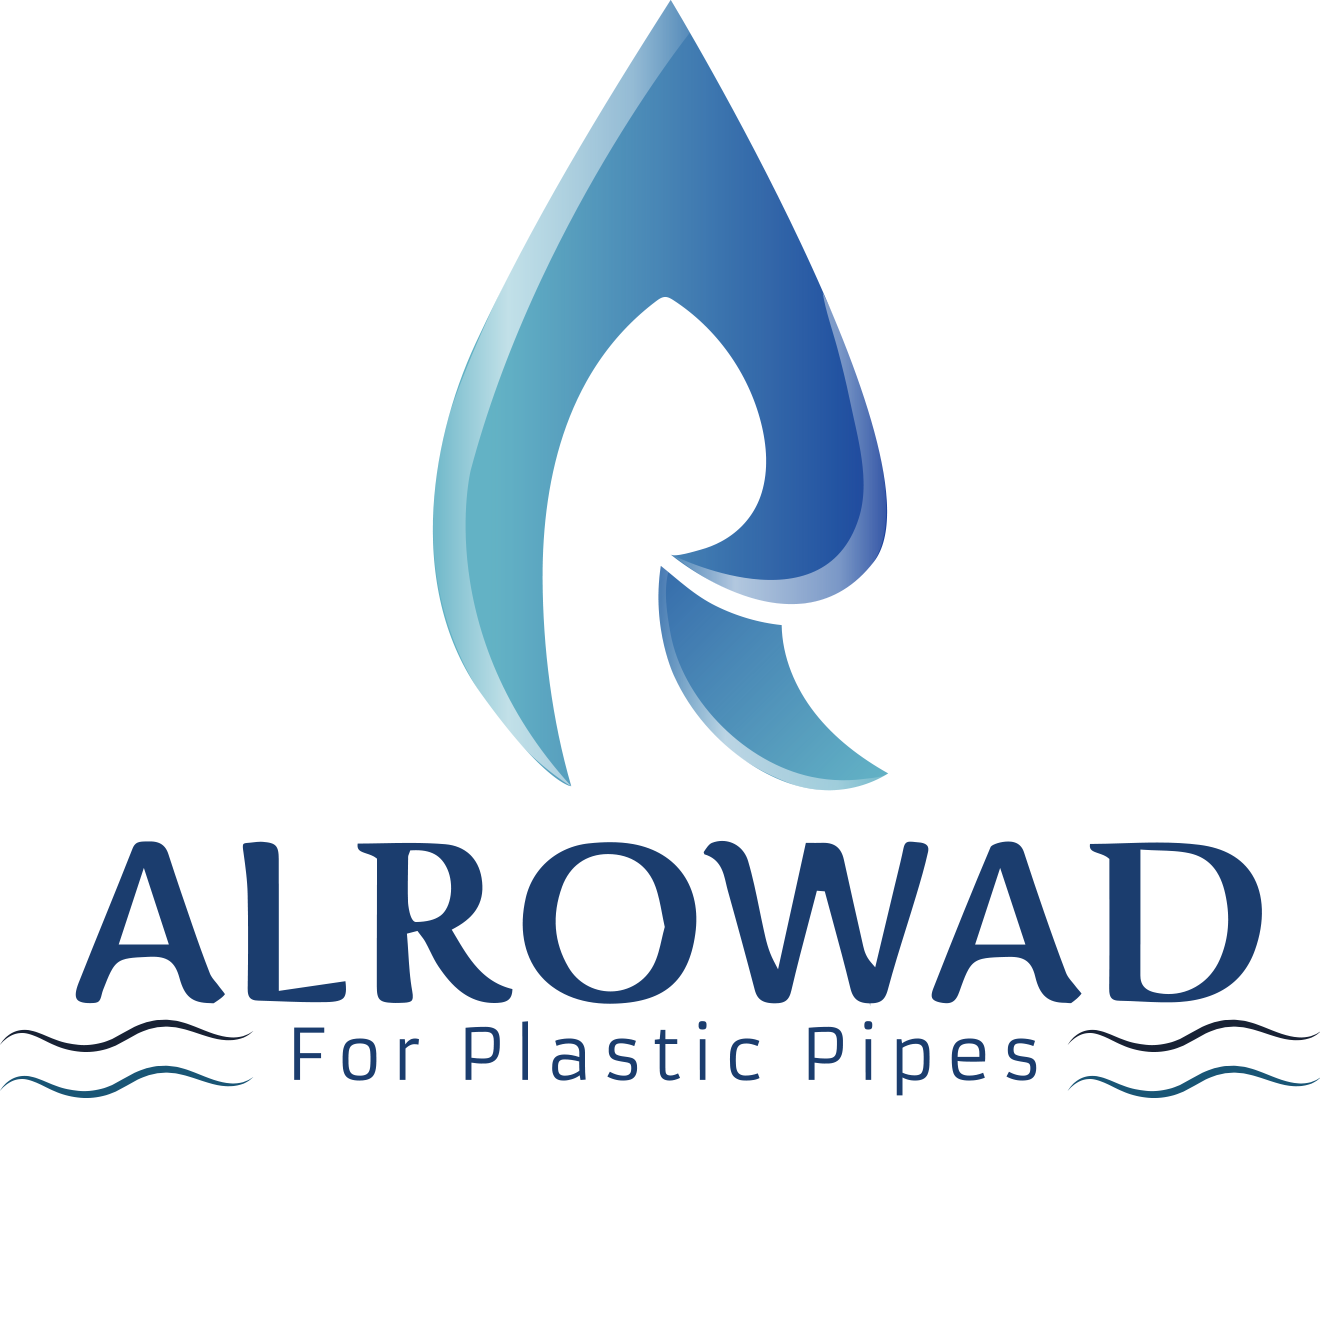 Al Rowad pipes